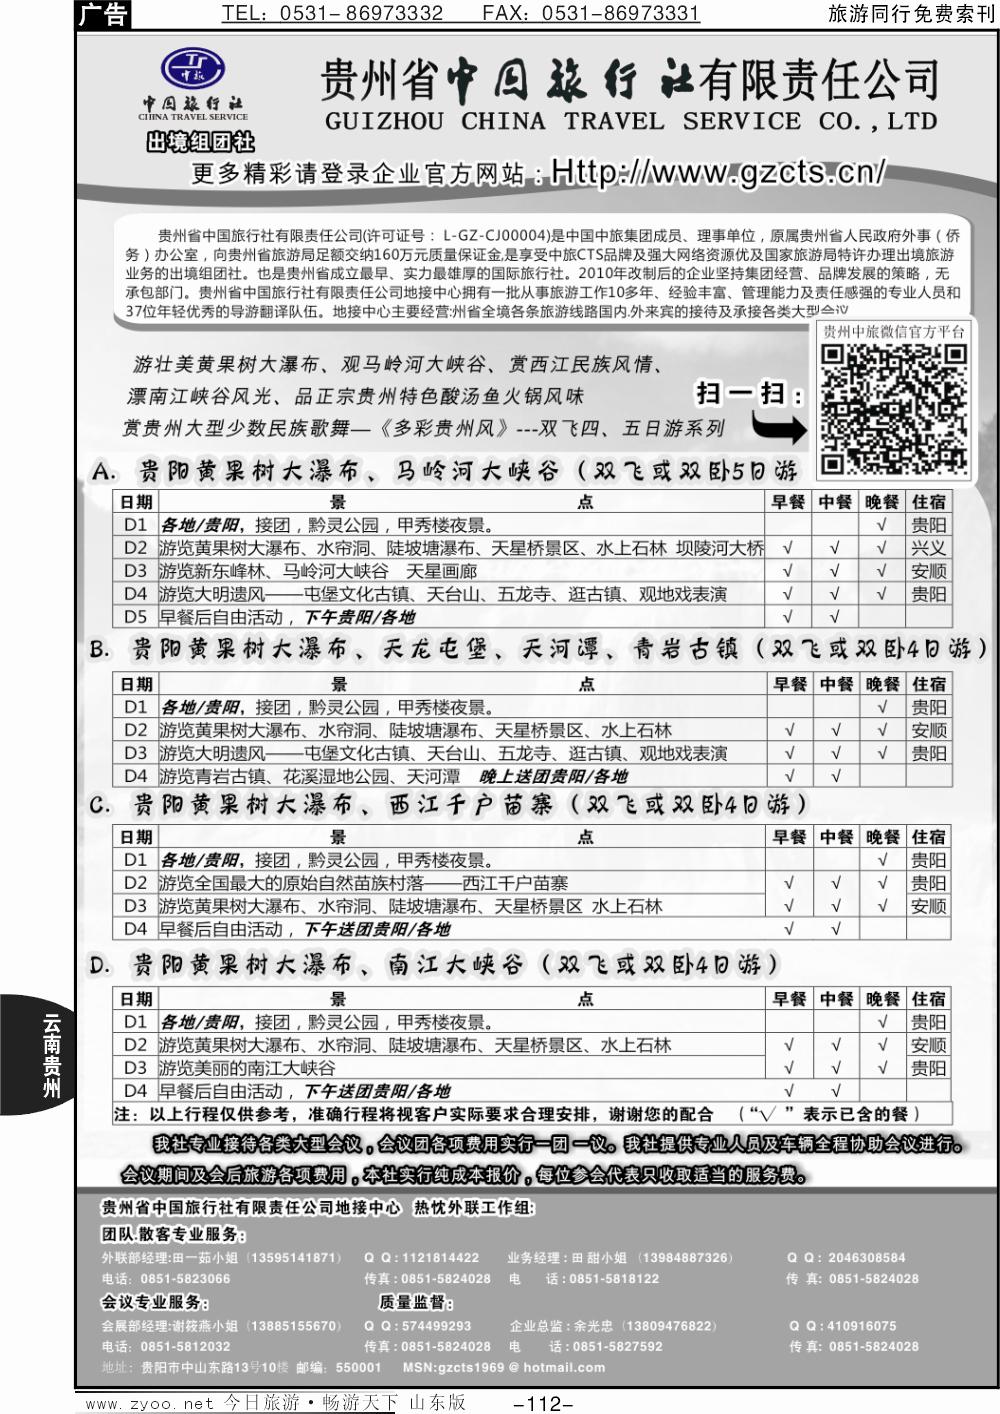 112p贵州省中国旅行社有限责任公司